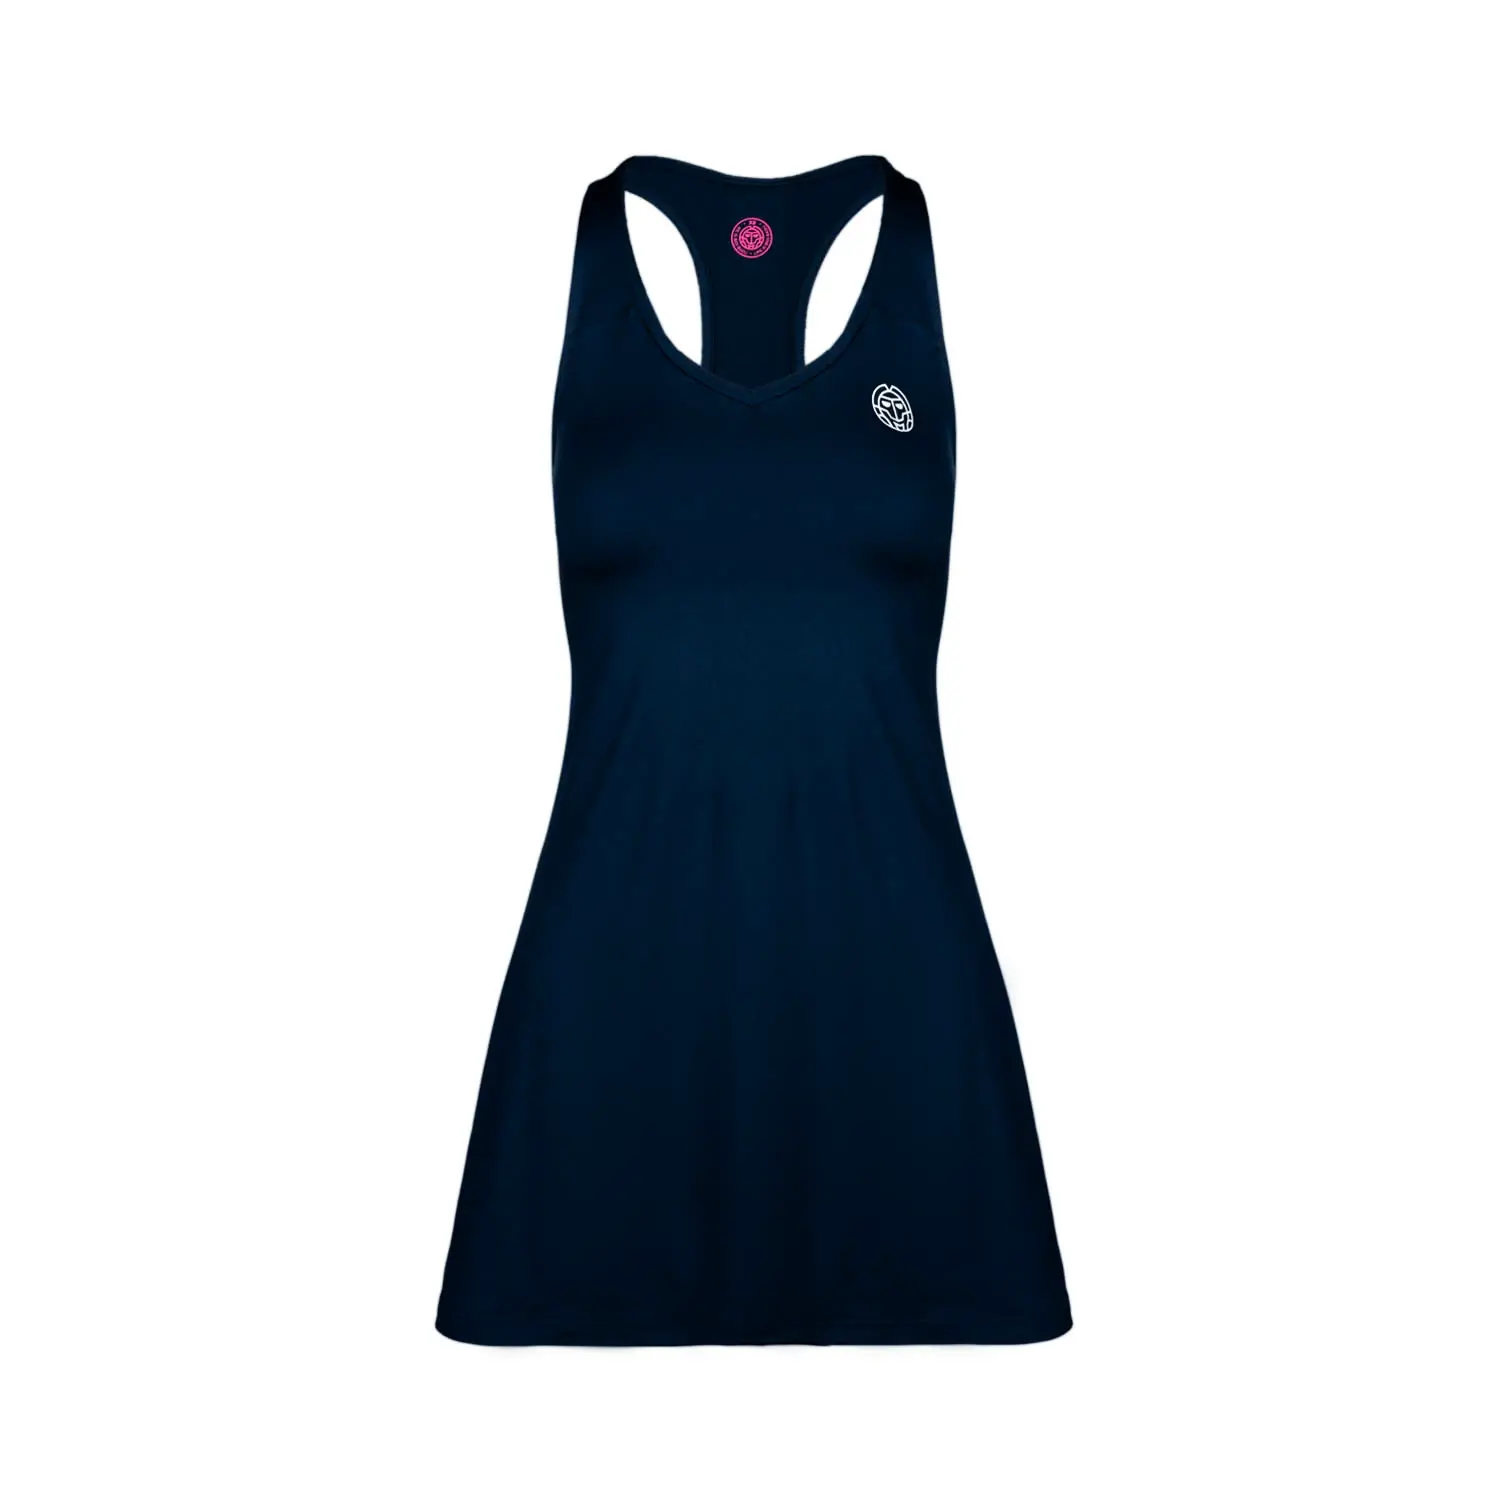 Dámské šaty BIDI BADU  Sira Tech Dress Dark Blue M